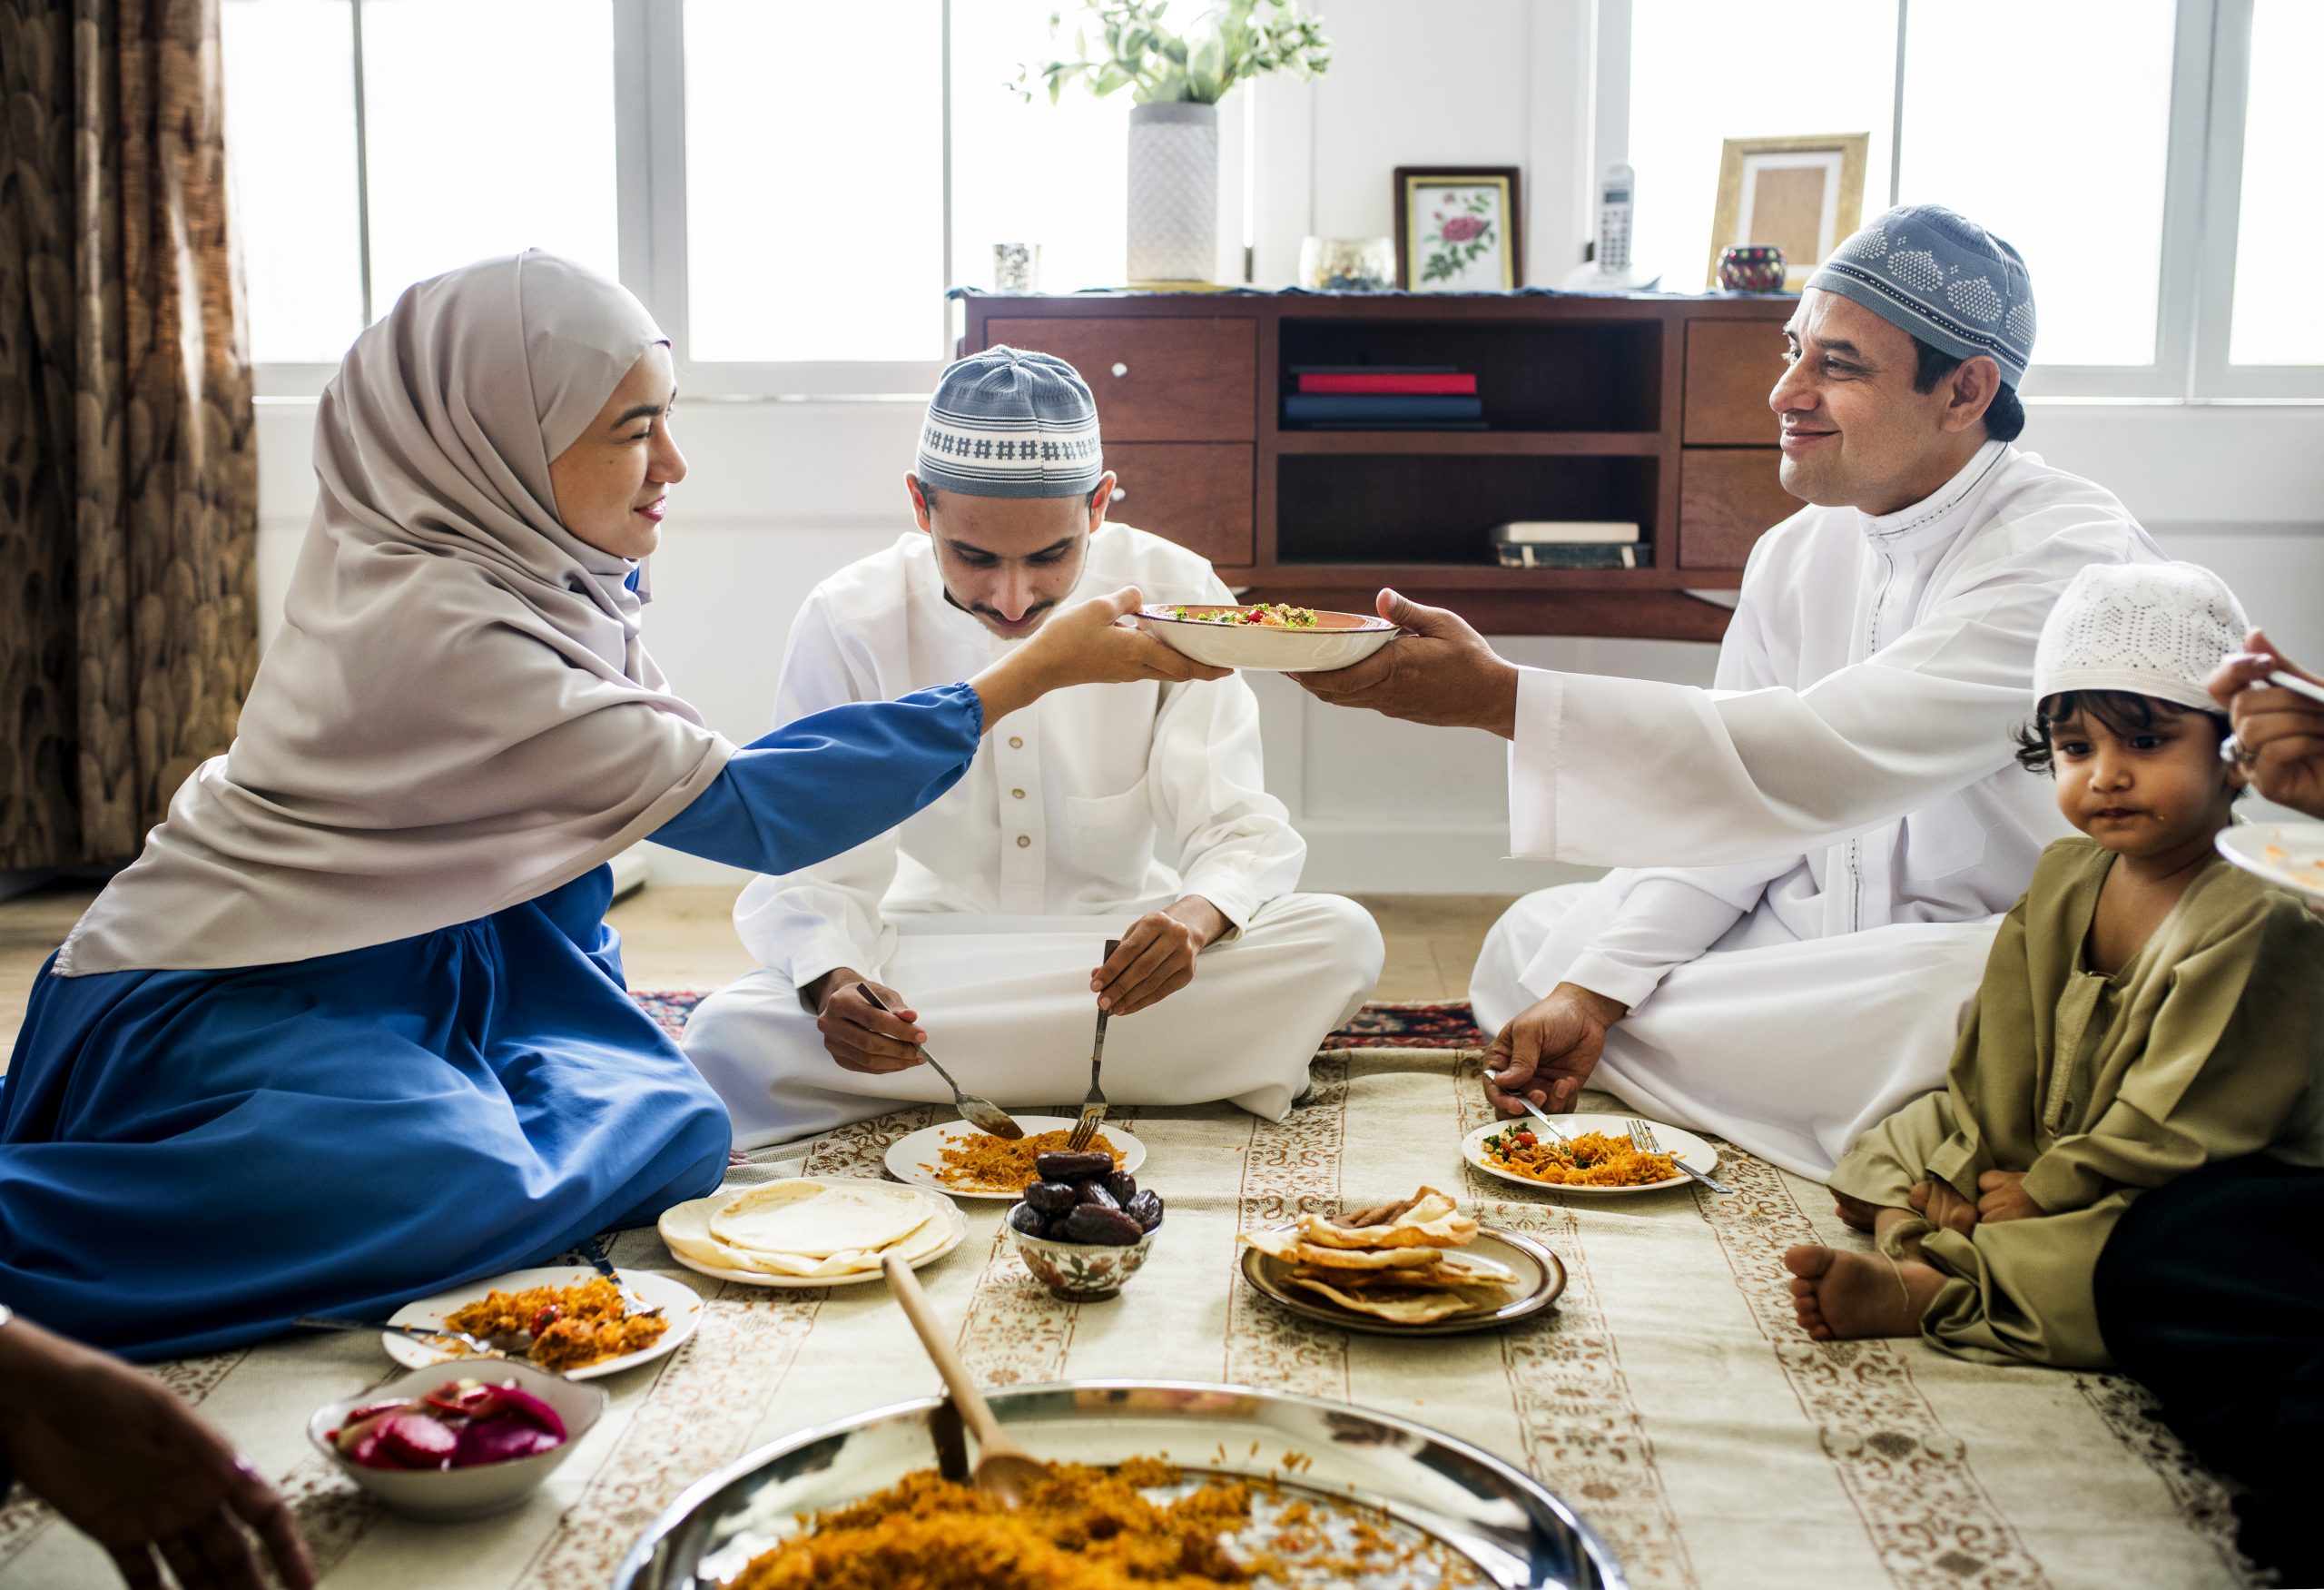 Что означает рамадан у мусульман. Мусульманская семья. Арабская семья. Традиционная мусульманская еда. Традиции мусульман в семье.